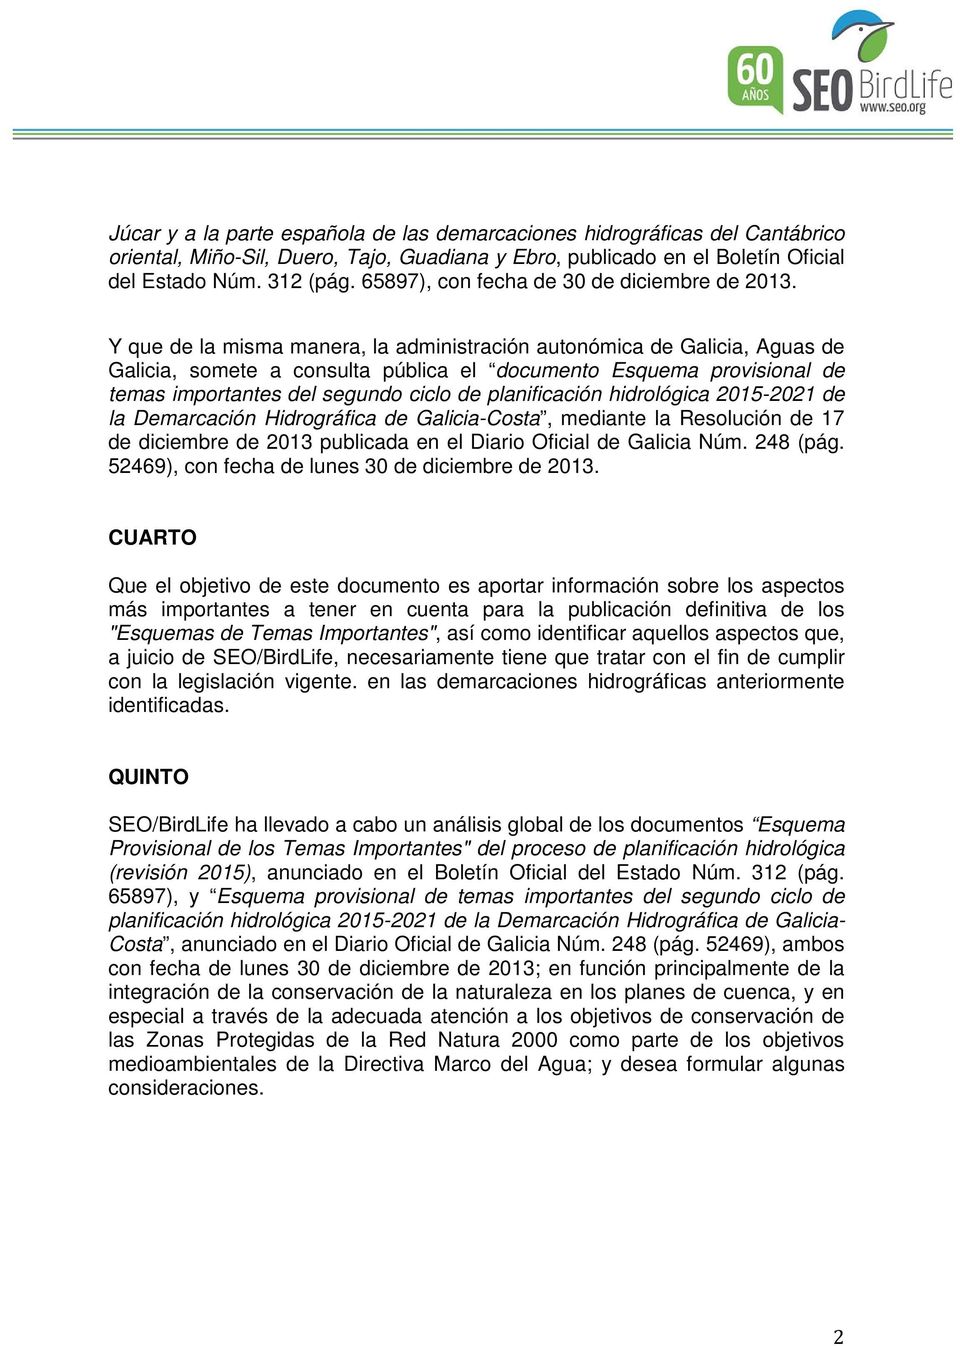 Y que de la misma manera, la administración autonómica de Galicia, Aguas de Galicia, somete a consulta pública el documento Esquema provisional de temas importantes del segundo ciclo de planificación